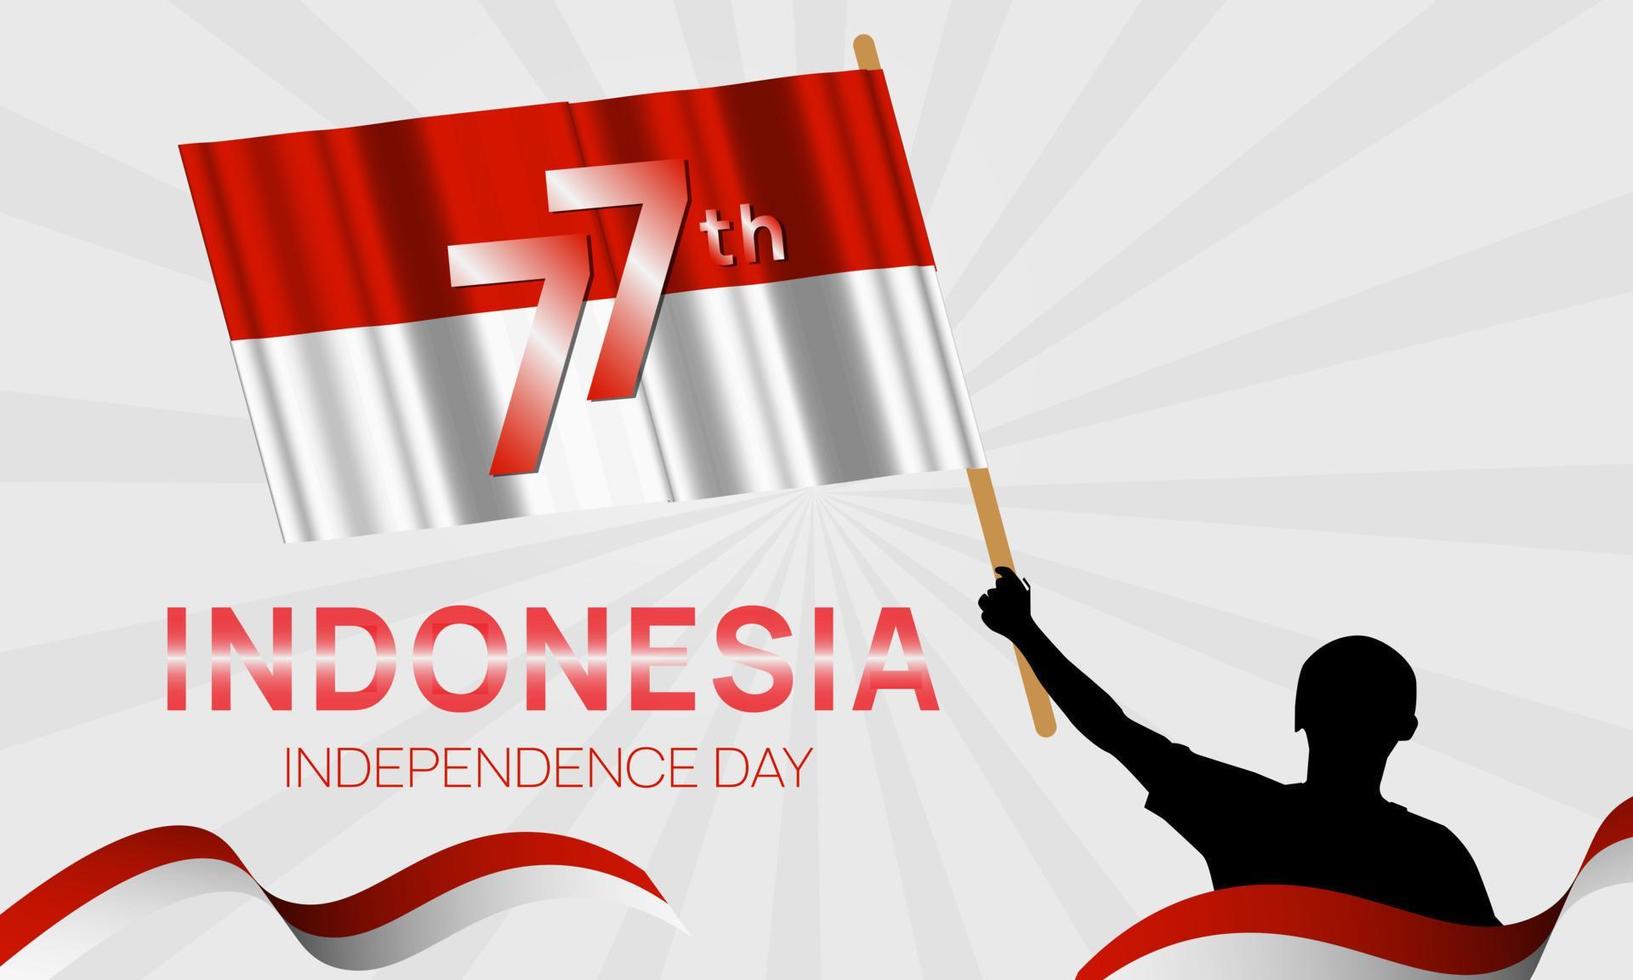 día de la independencia de indonesia 17 de agosto 77 años fondo de independencia de indonesia vector